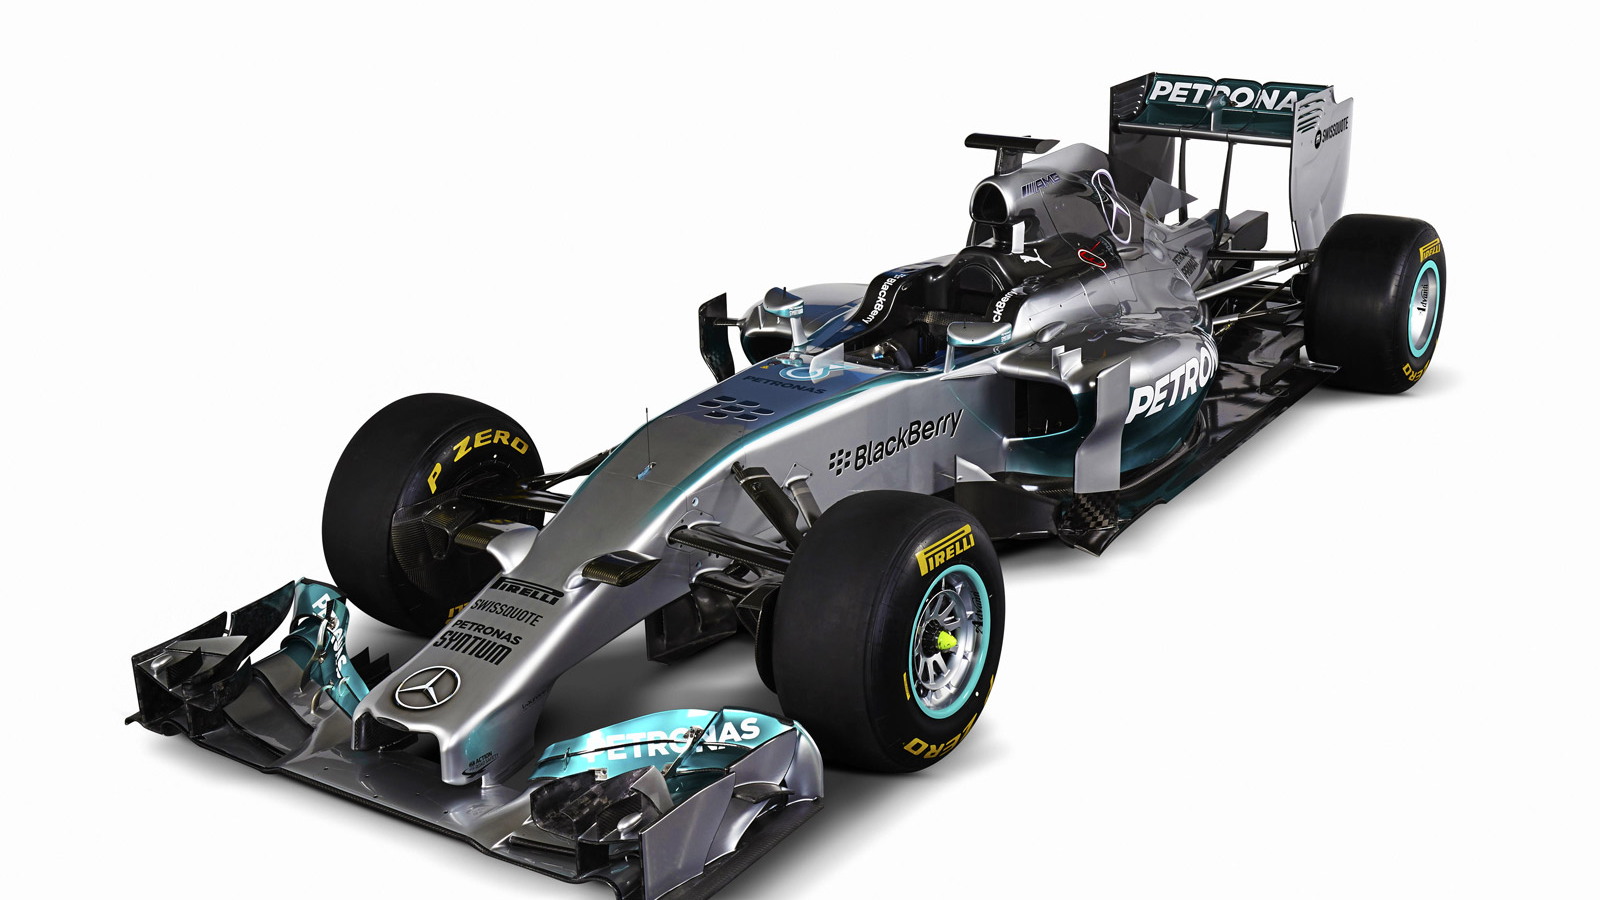 Mercedes AMG's W05 2014 Formula One car